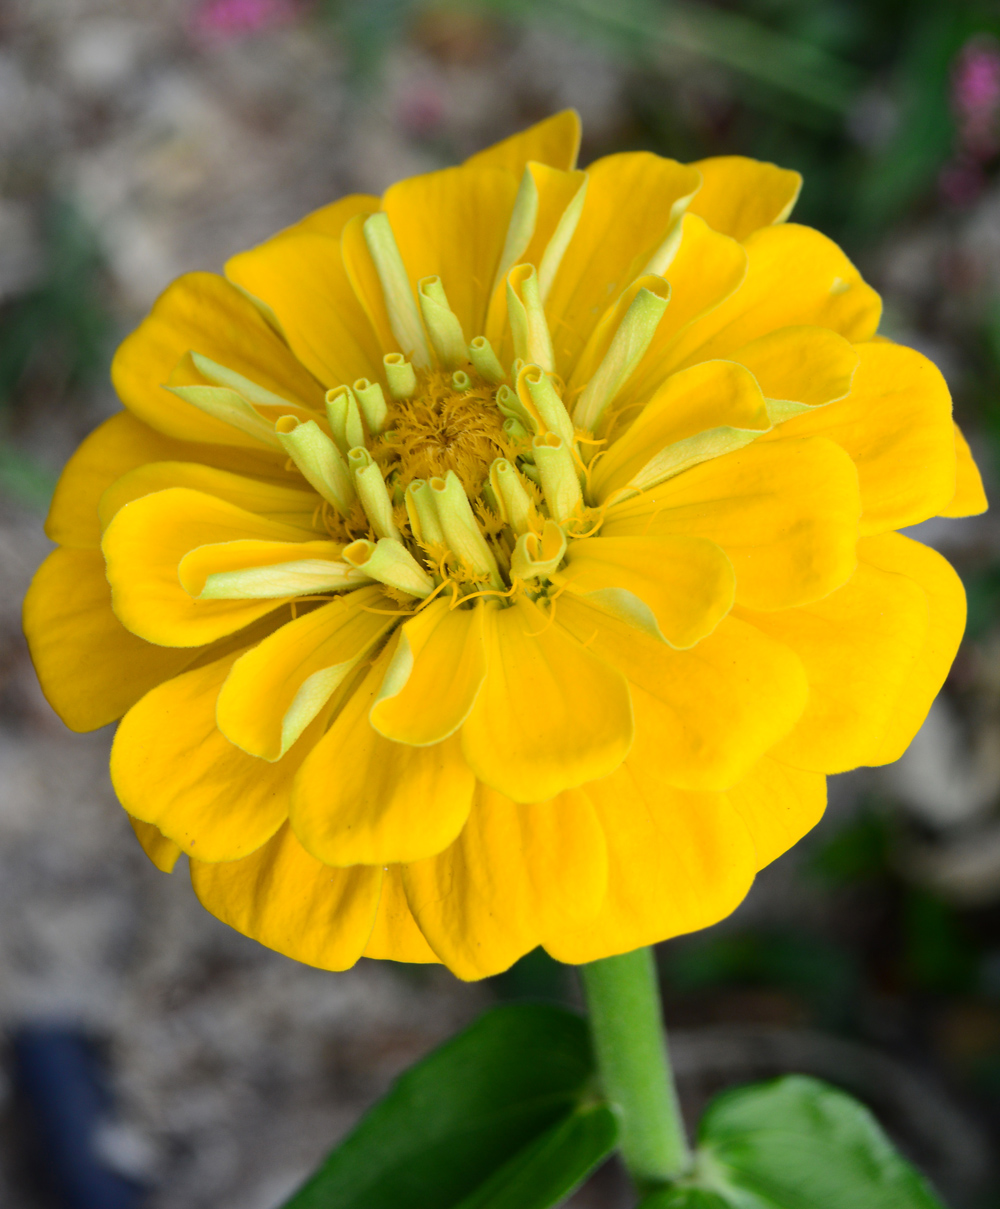 Yellow flower unknown